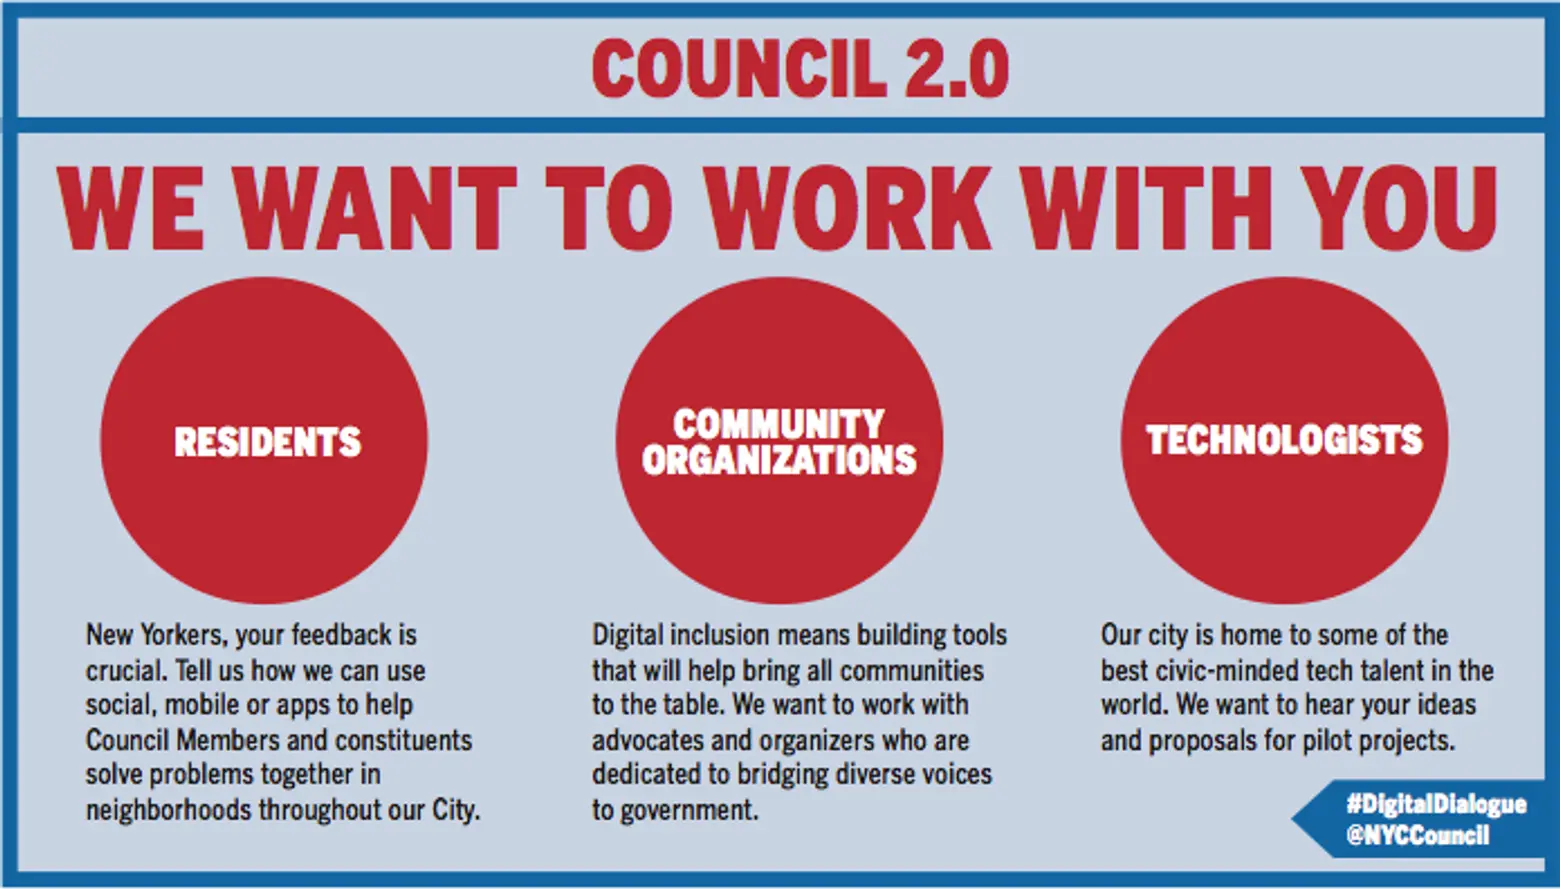 Council 2.0, New York City Council